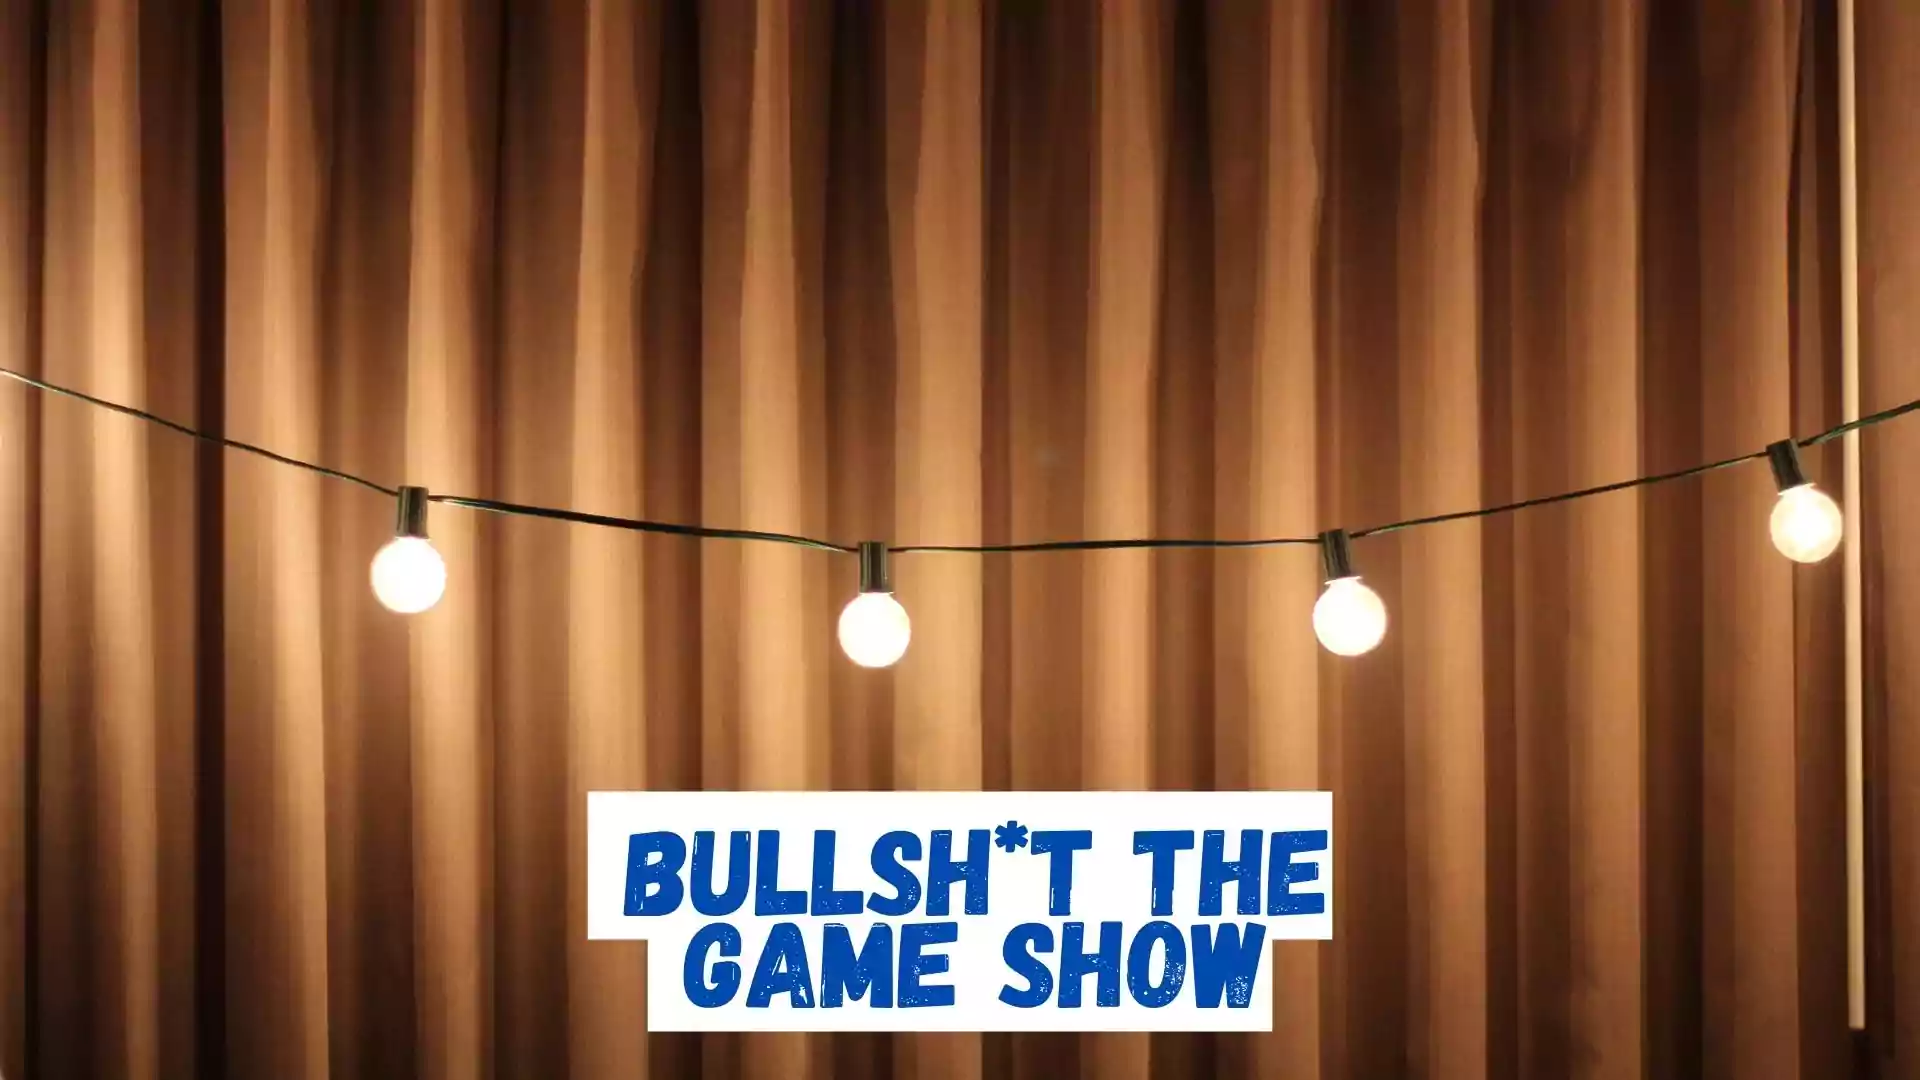 Bullsht the Game Show Wallpaper and Image